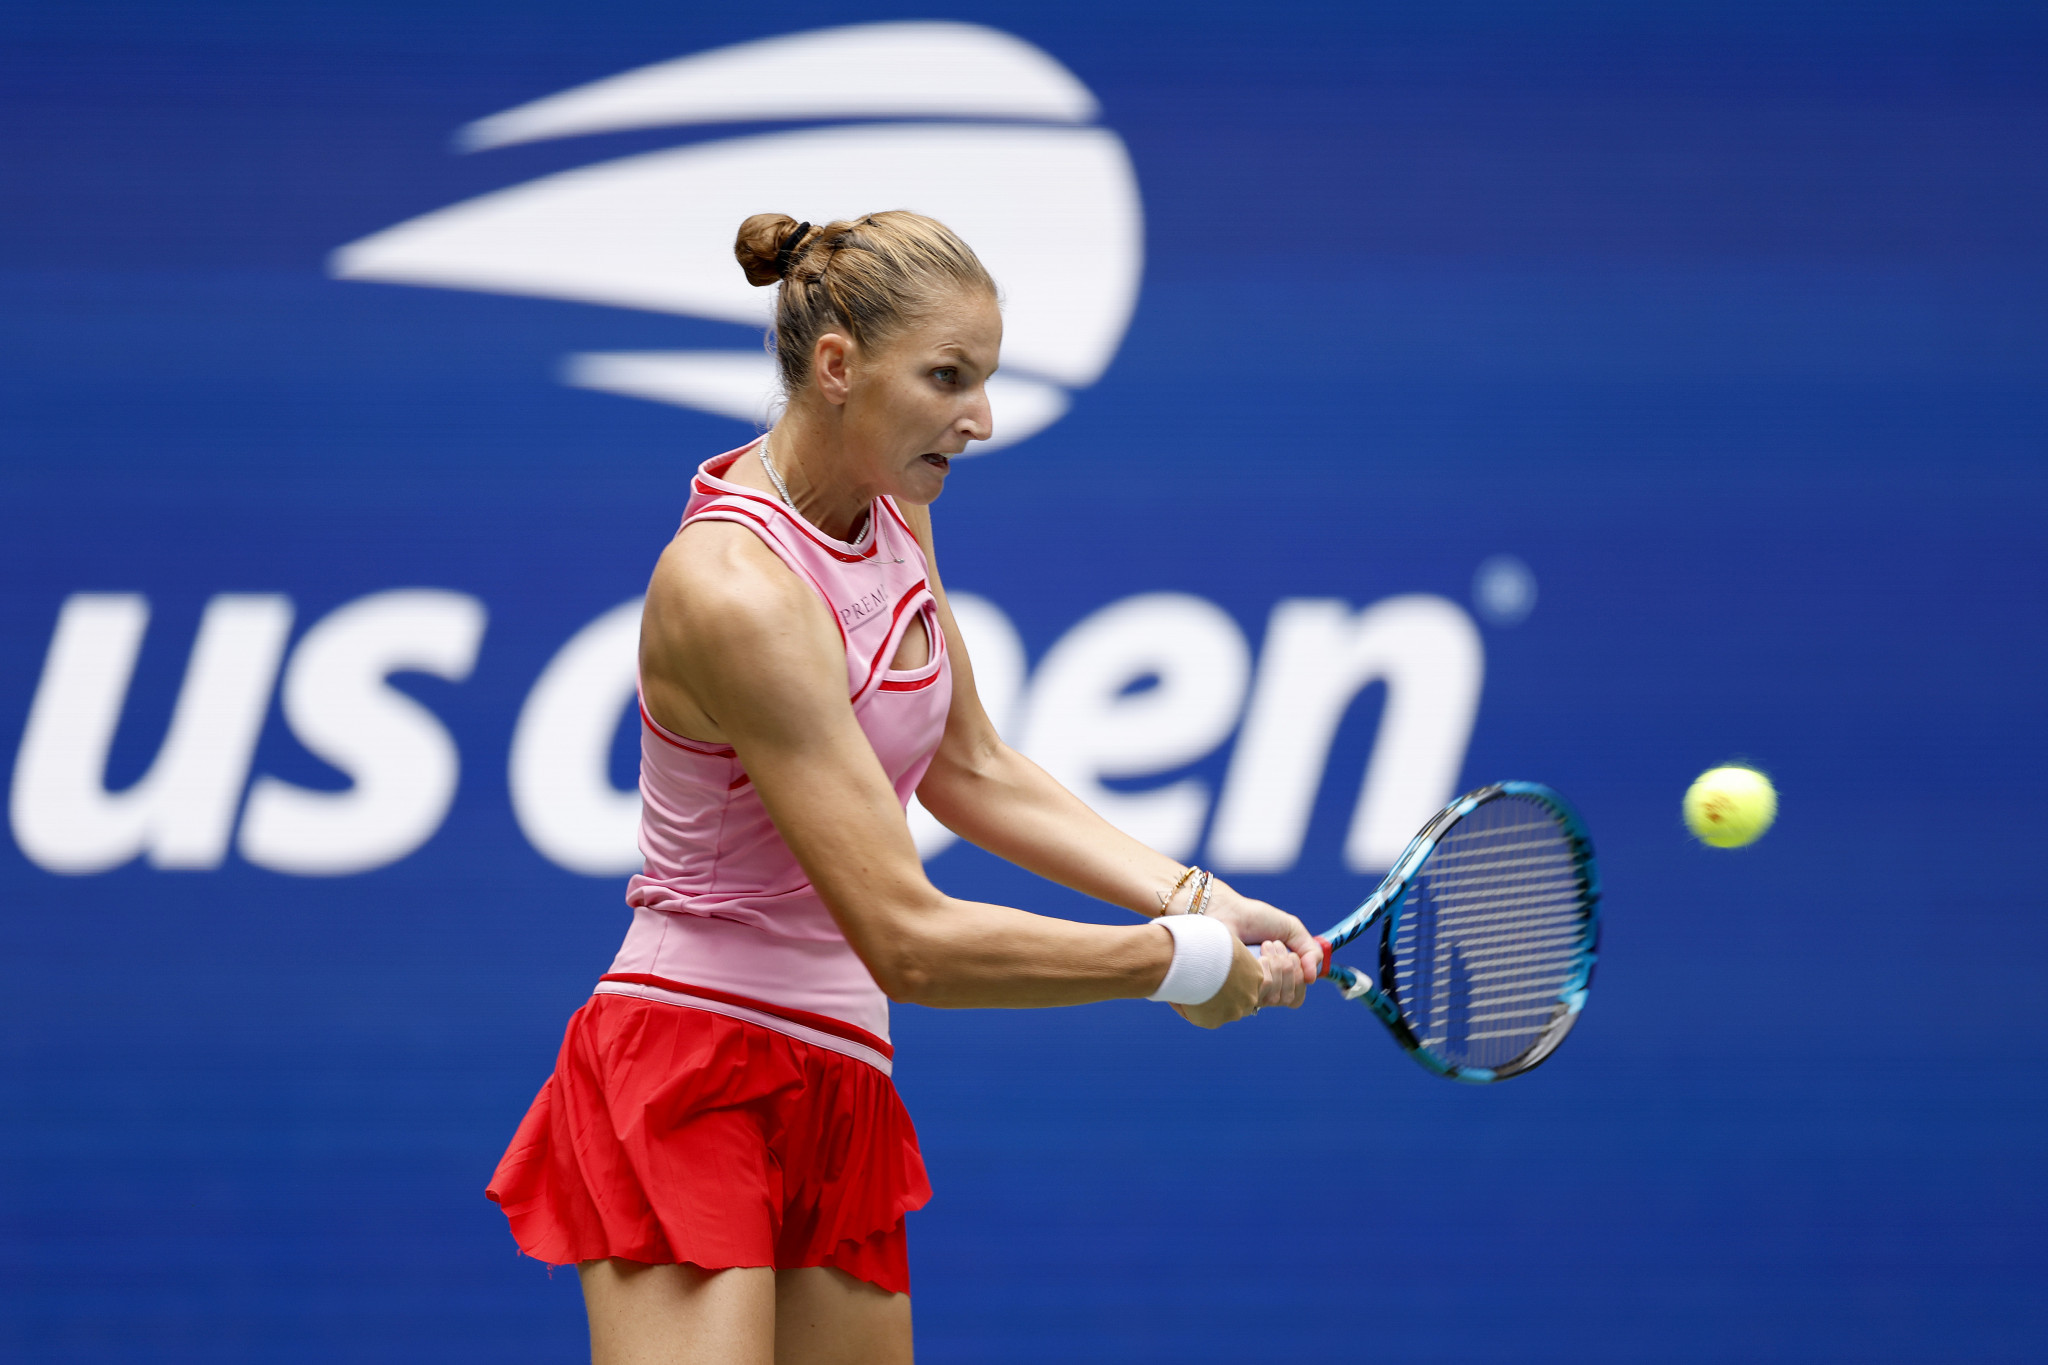 Karolina Pliskova was eliminated after a straight sets loss to Aryna Sabalenka ©Getty Images